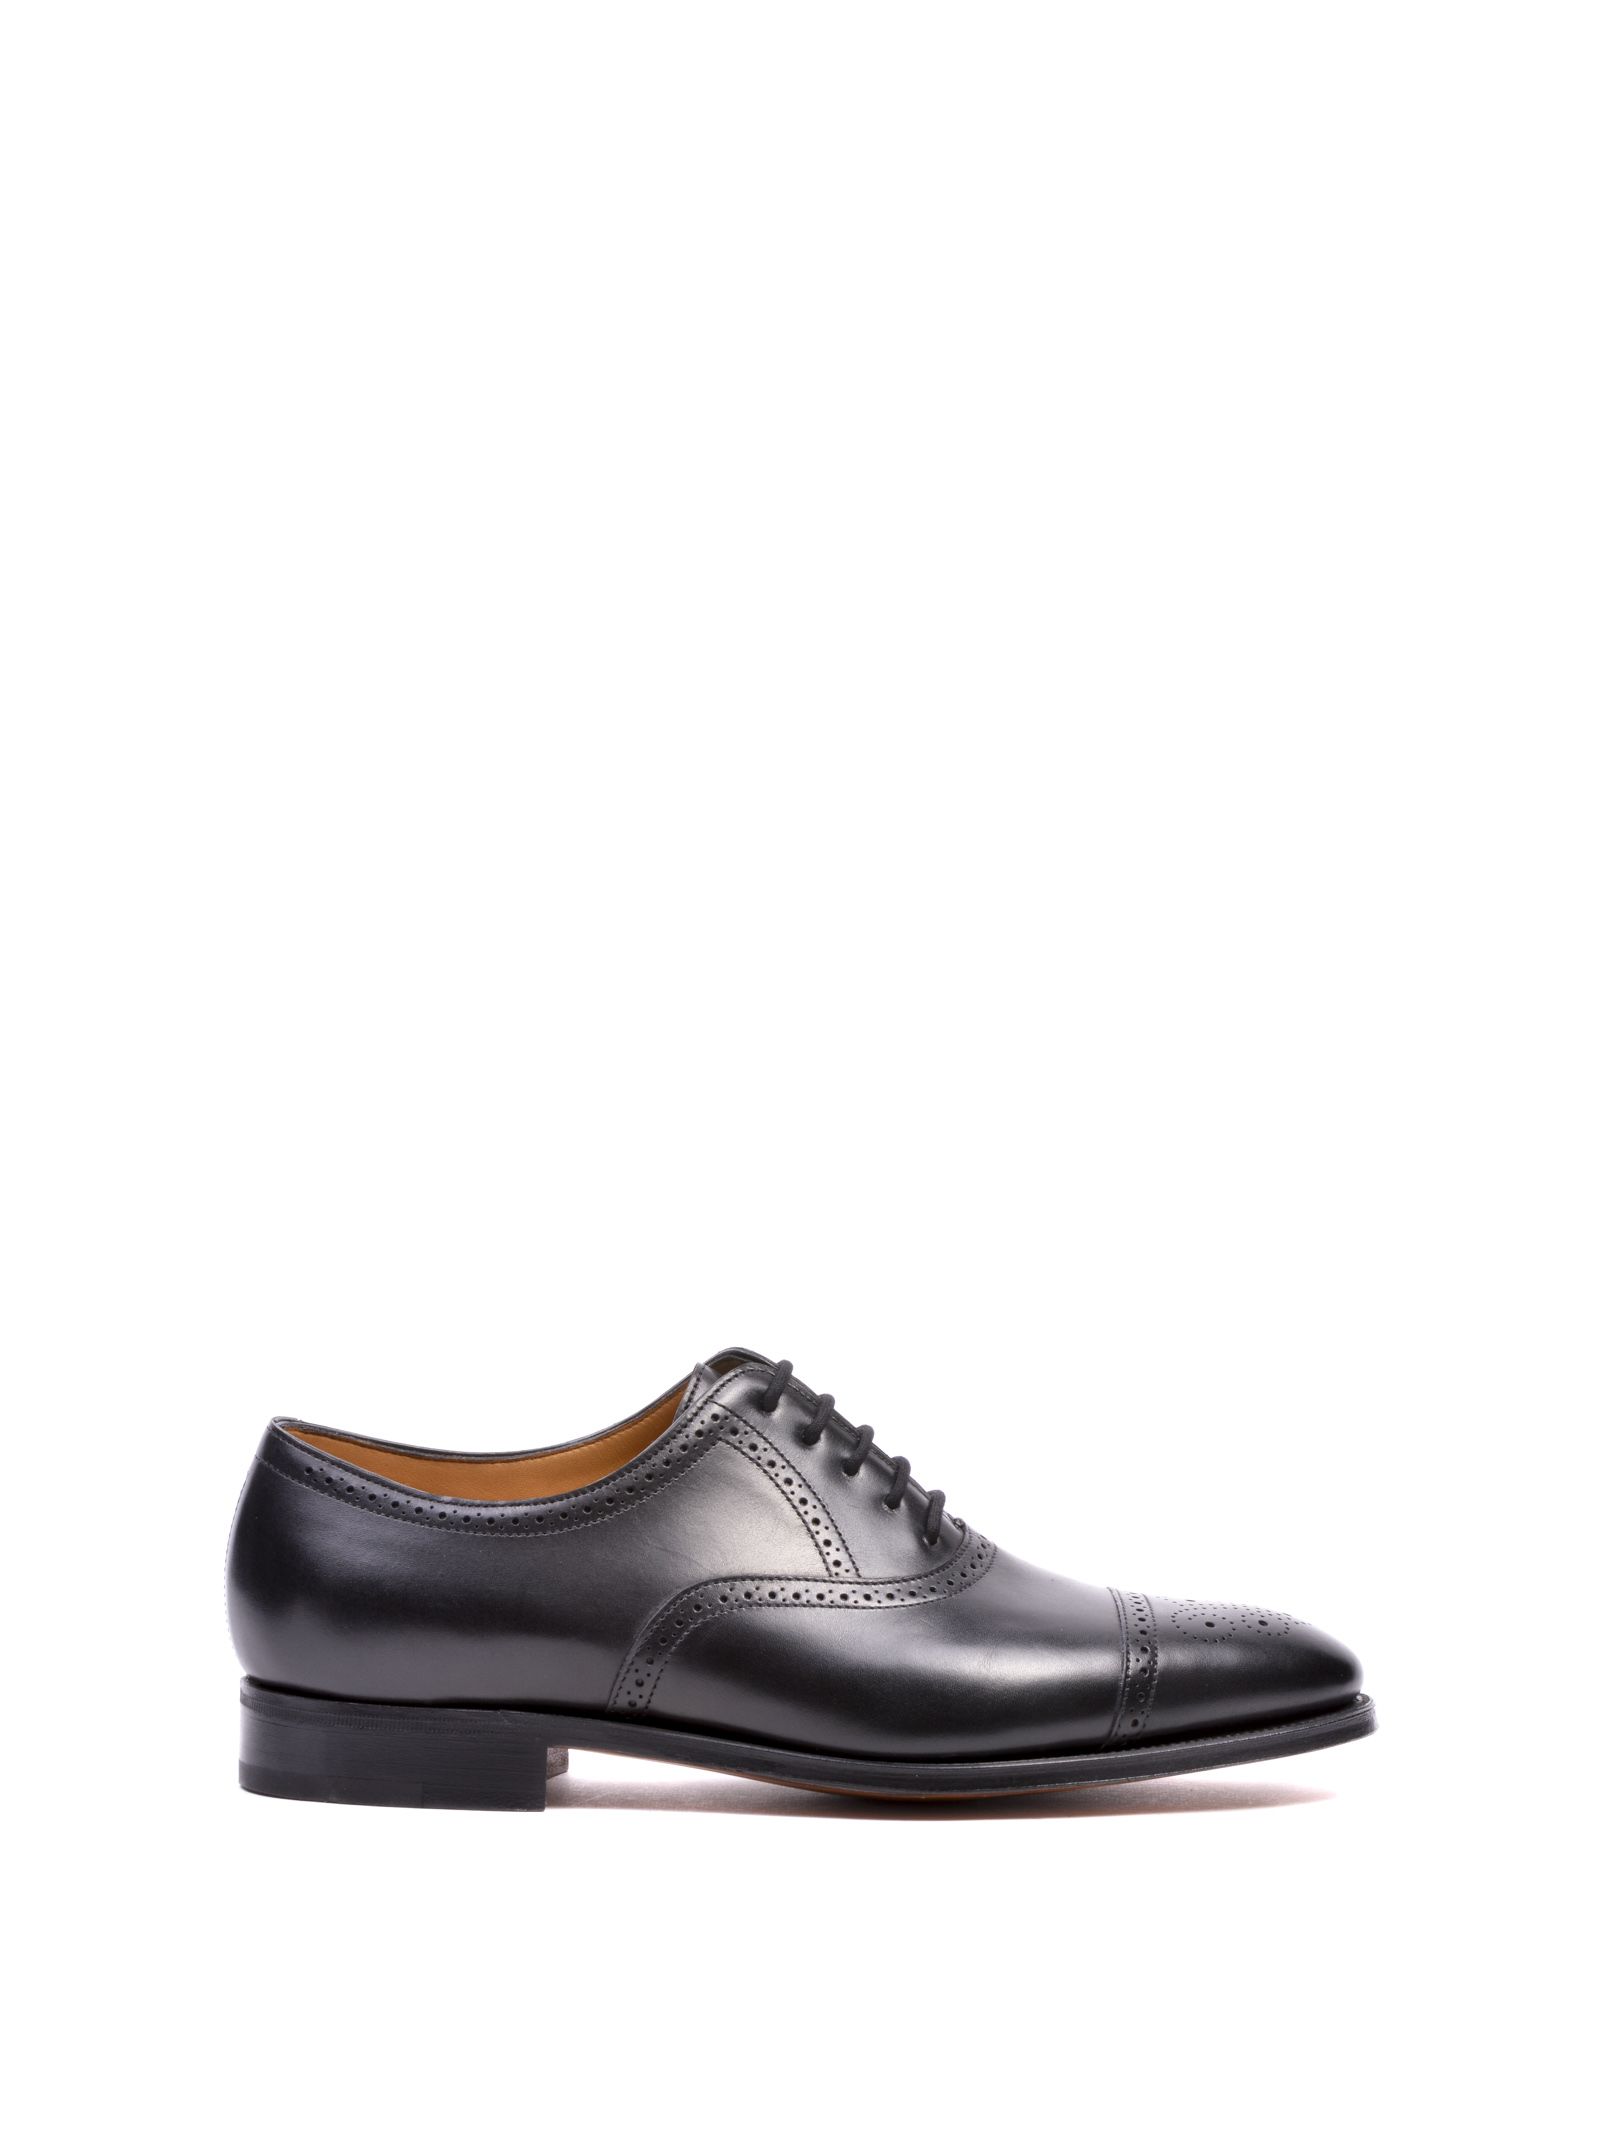 John Lobb - John Lobb Saunton Oxford Shoes - Black Calf, Men's Laced ...